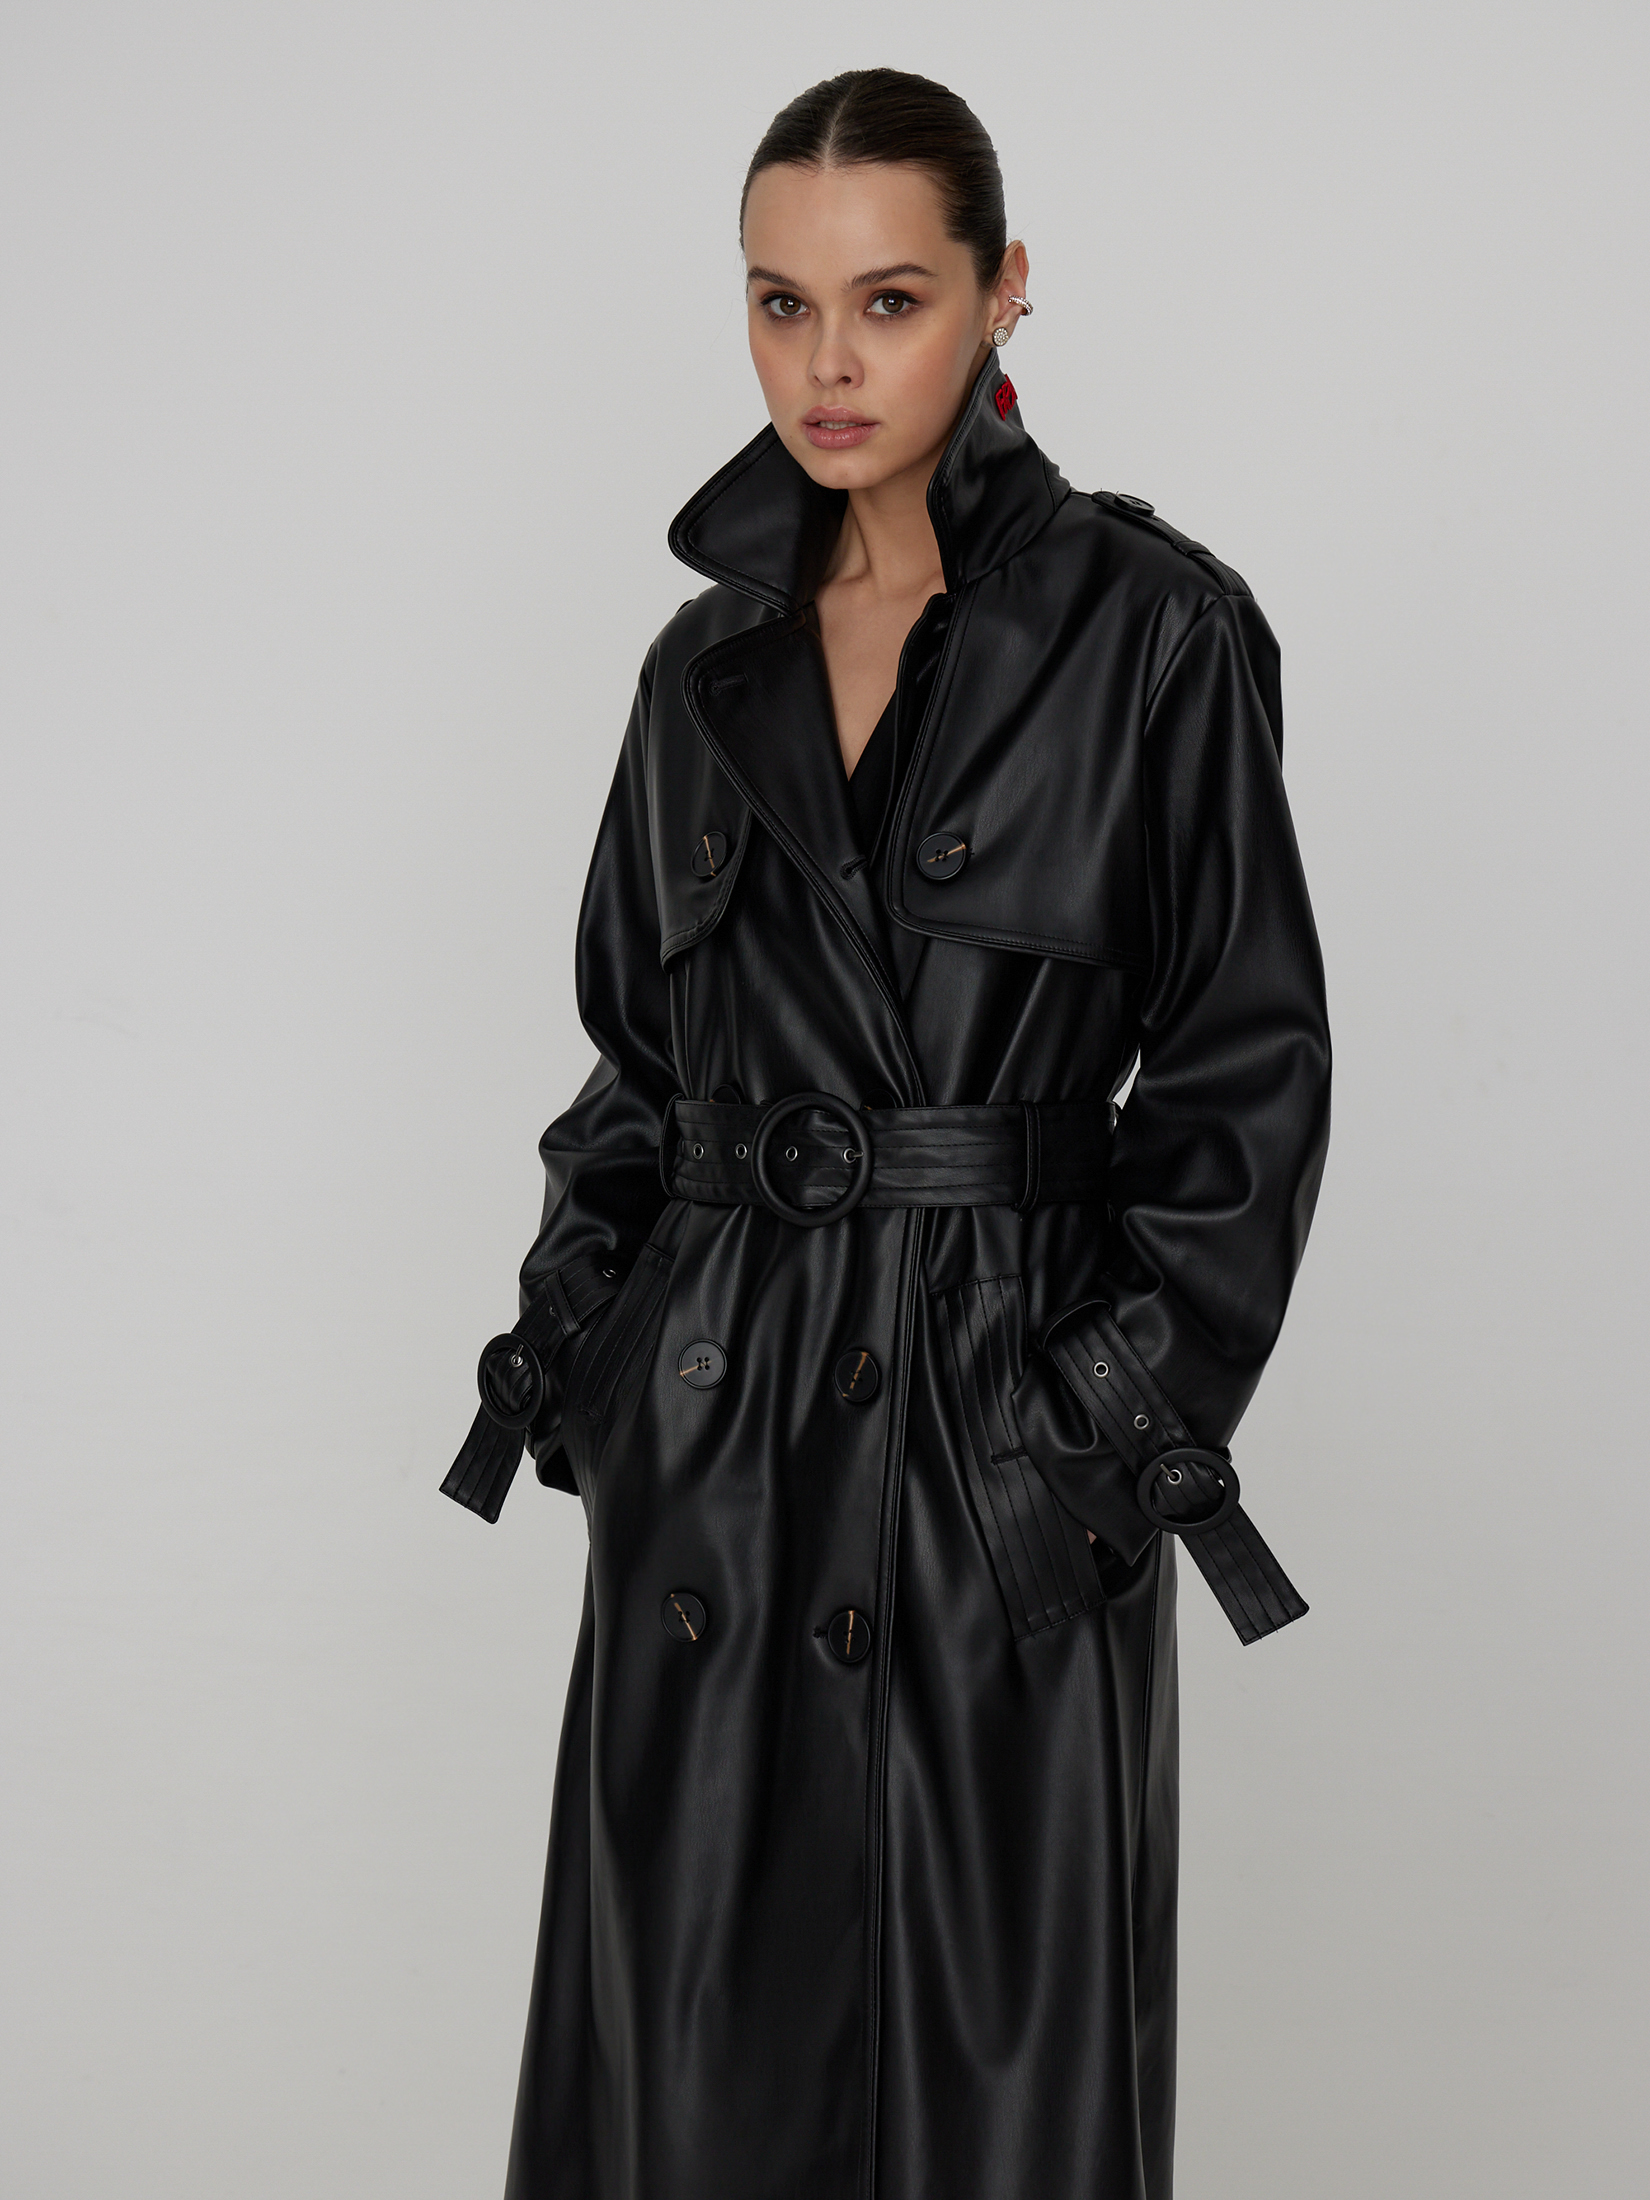 Тренчкот женский черный пиджак черный нарядный 44 46 размер